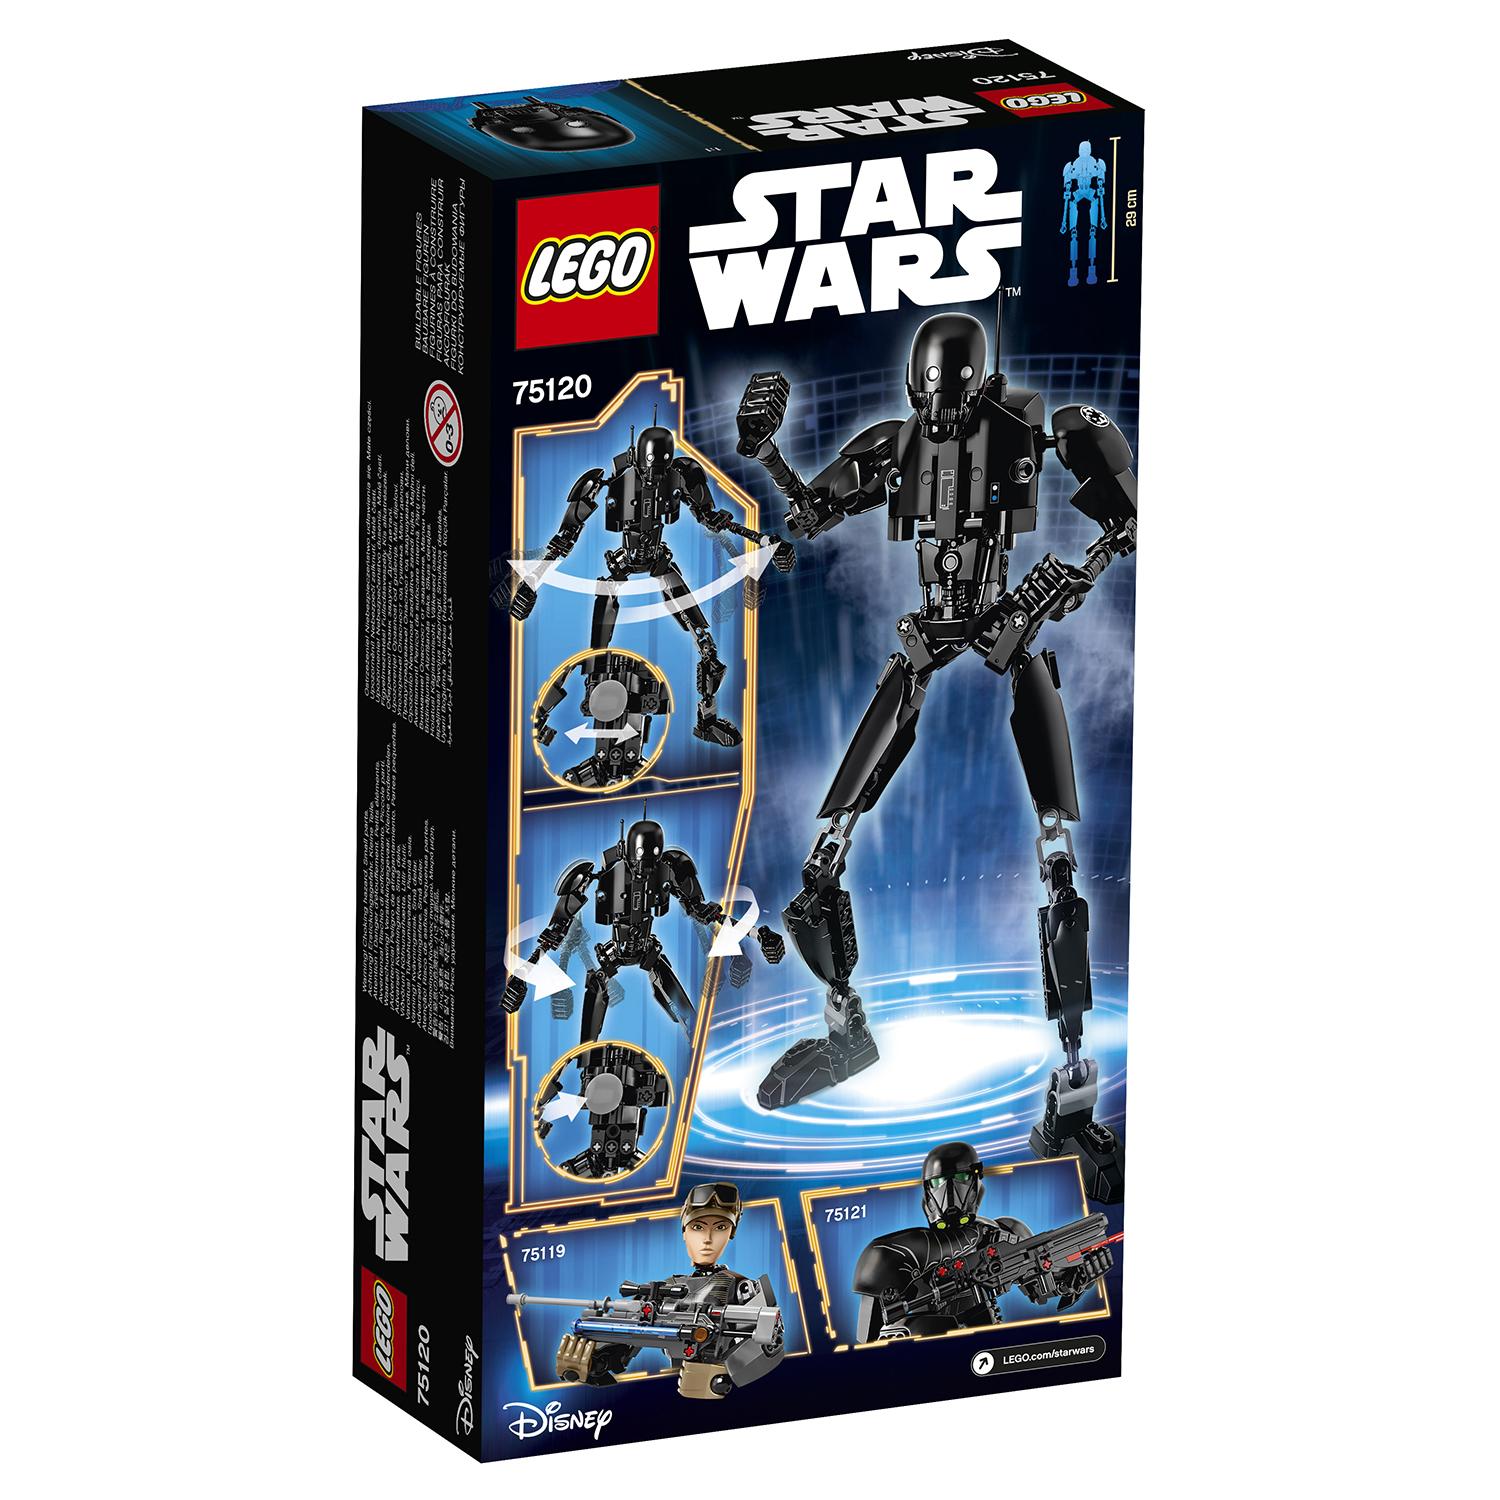 Lego Star Wars 75120 K-2SO